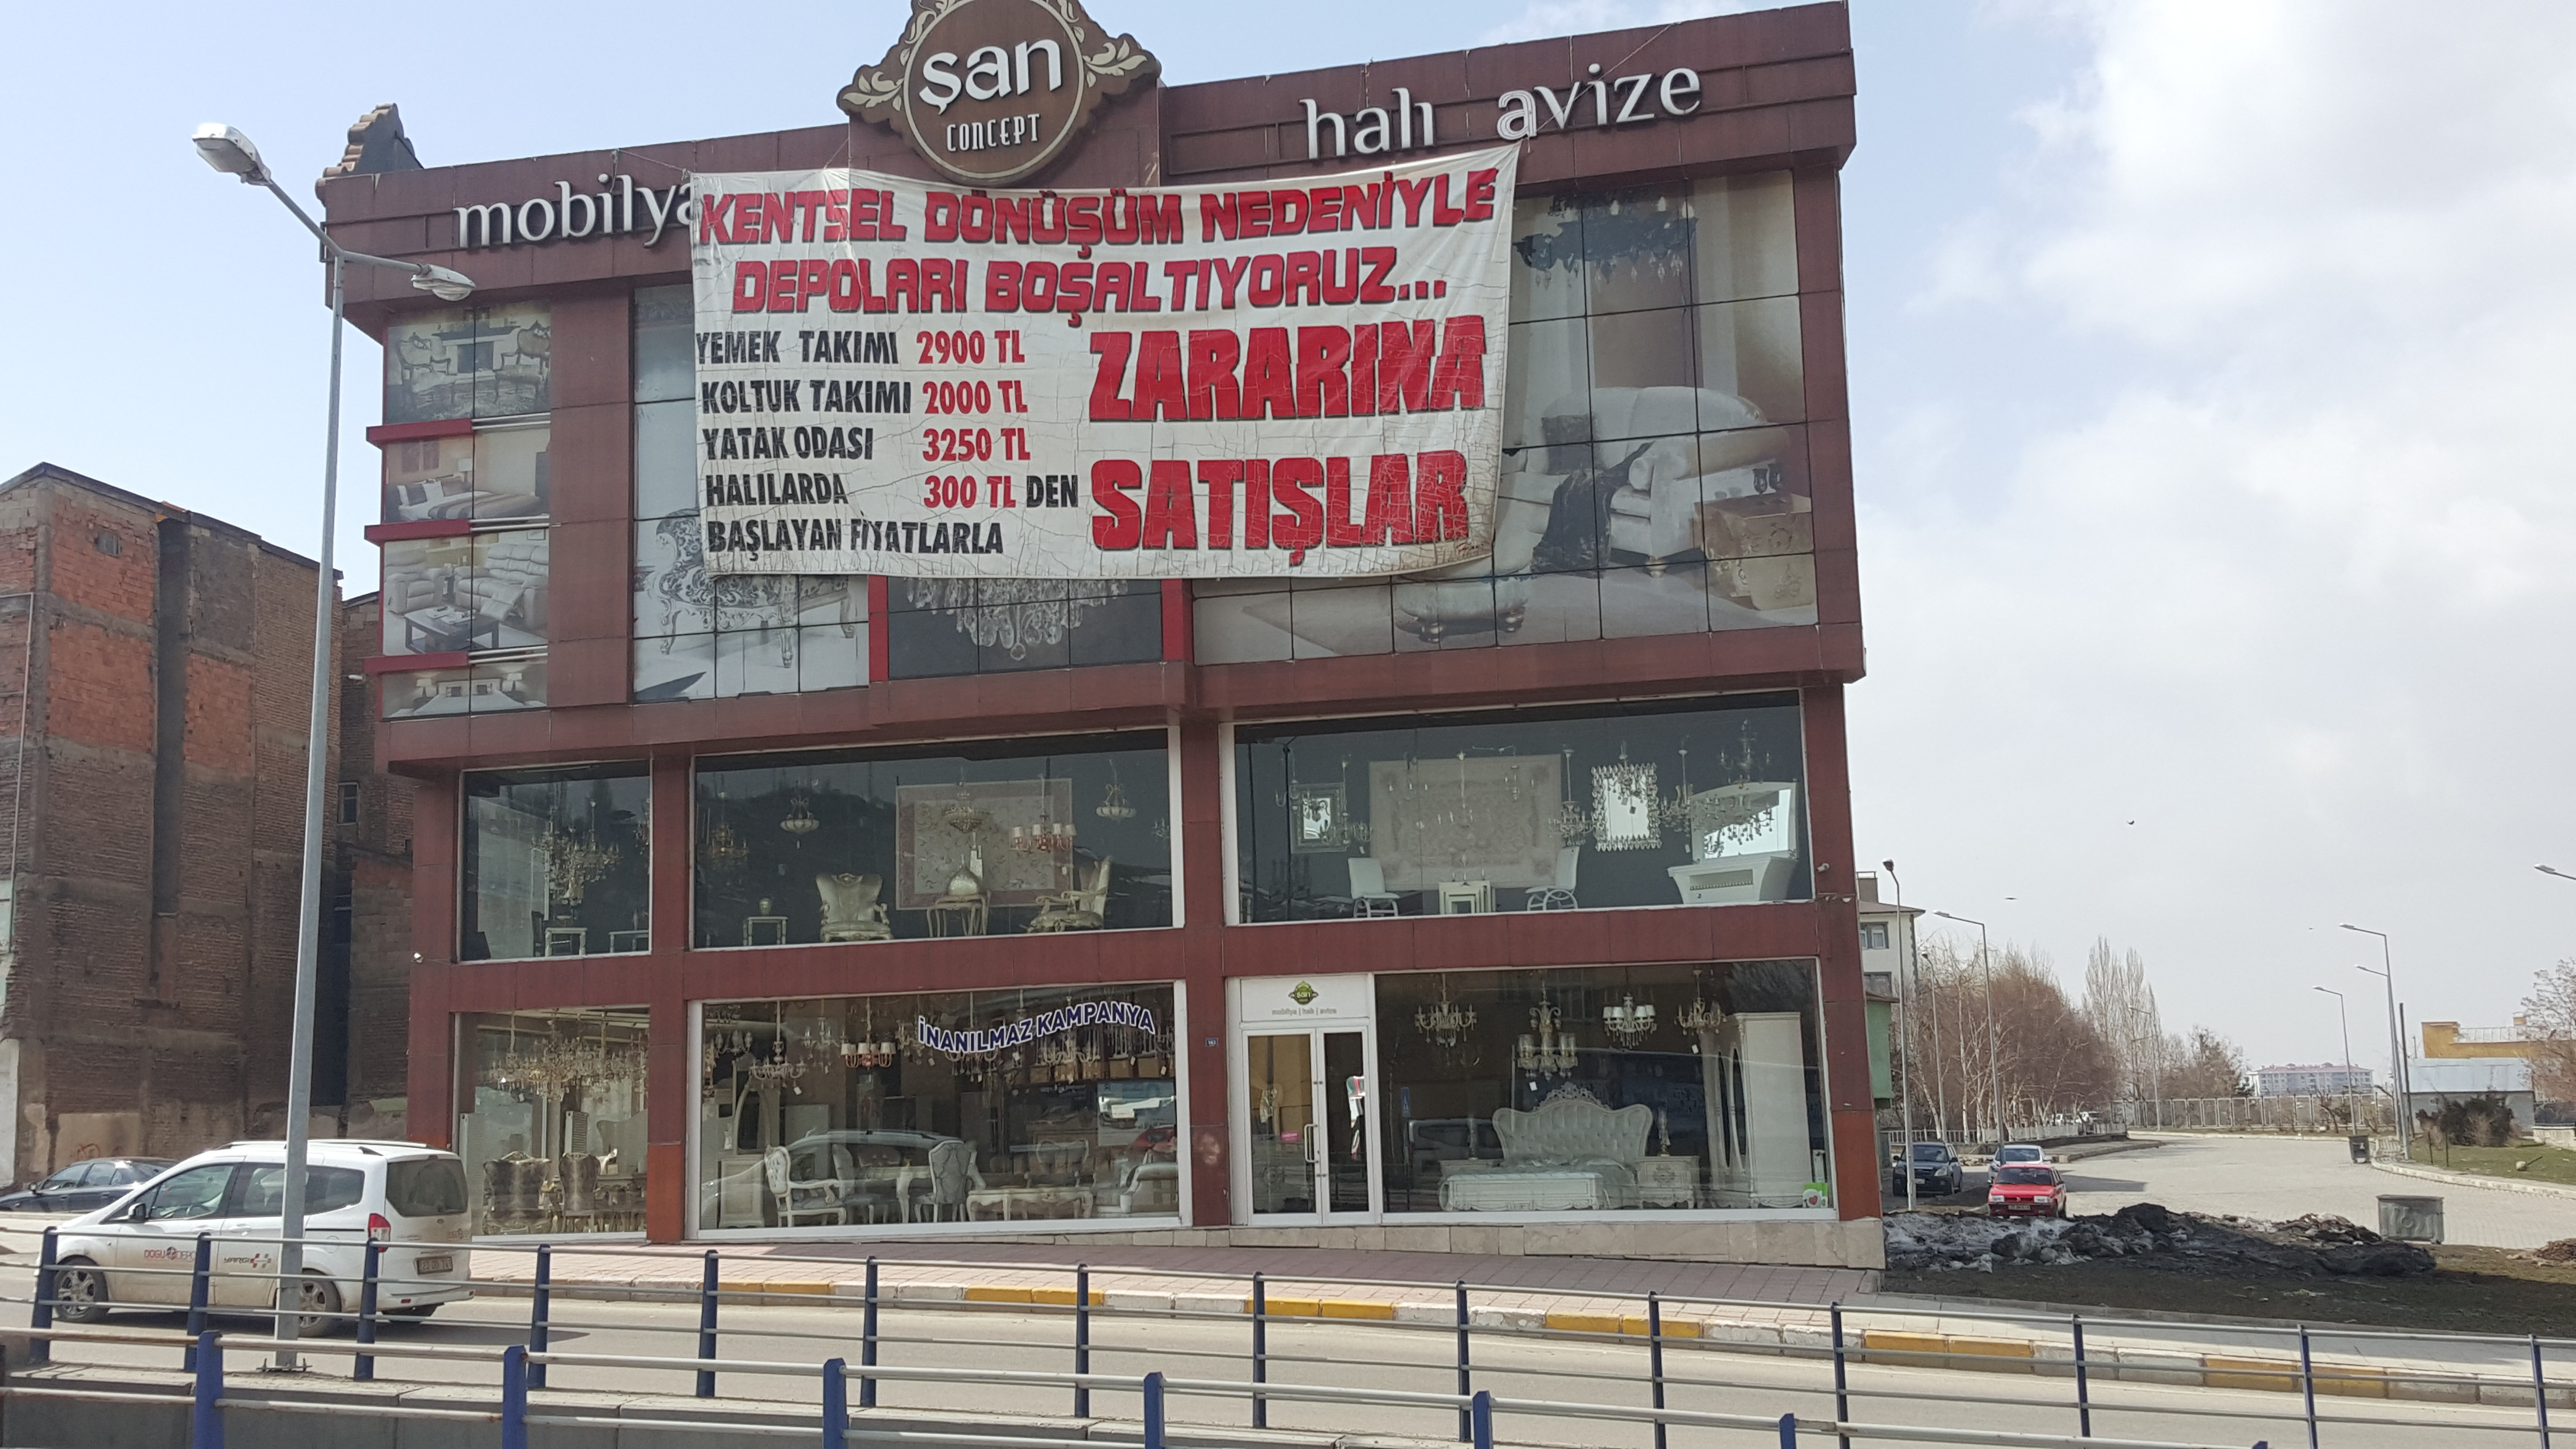 Bostancıoğlu Plaza